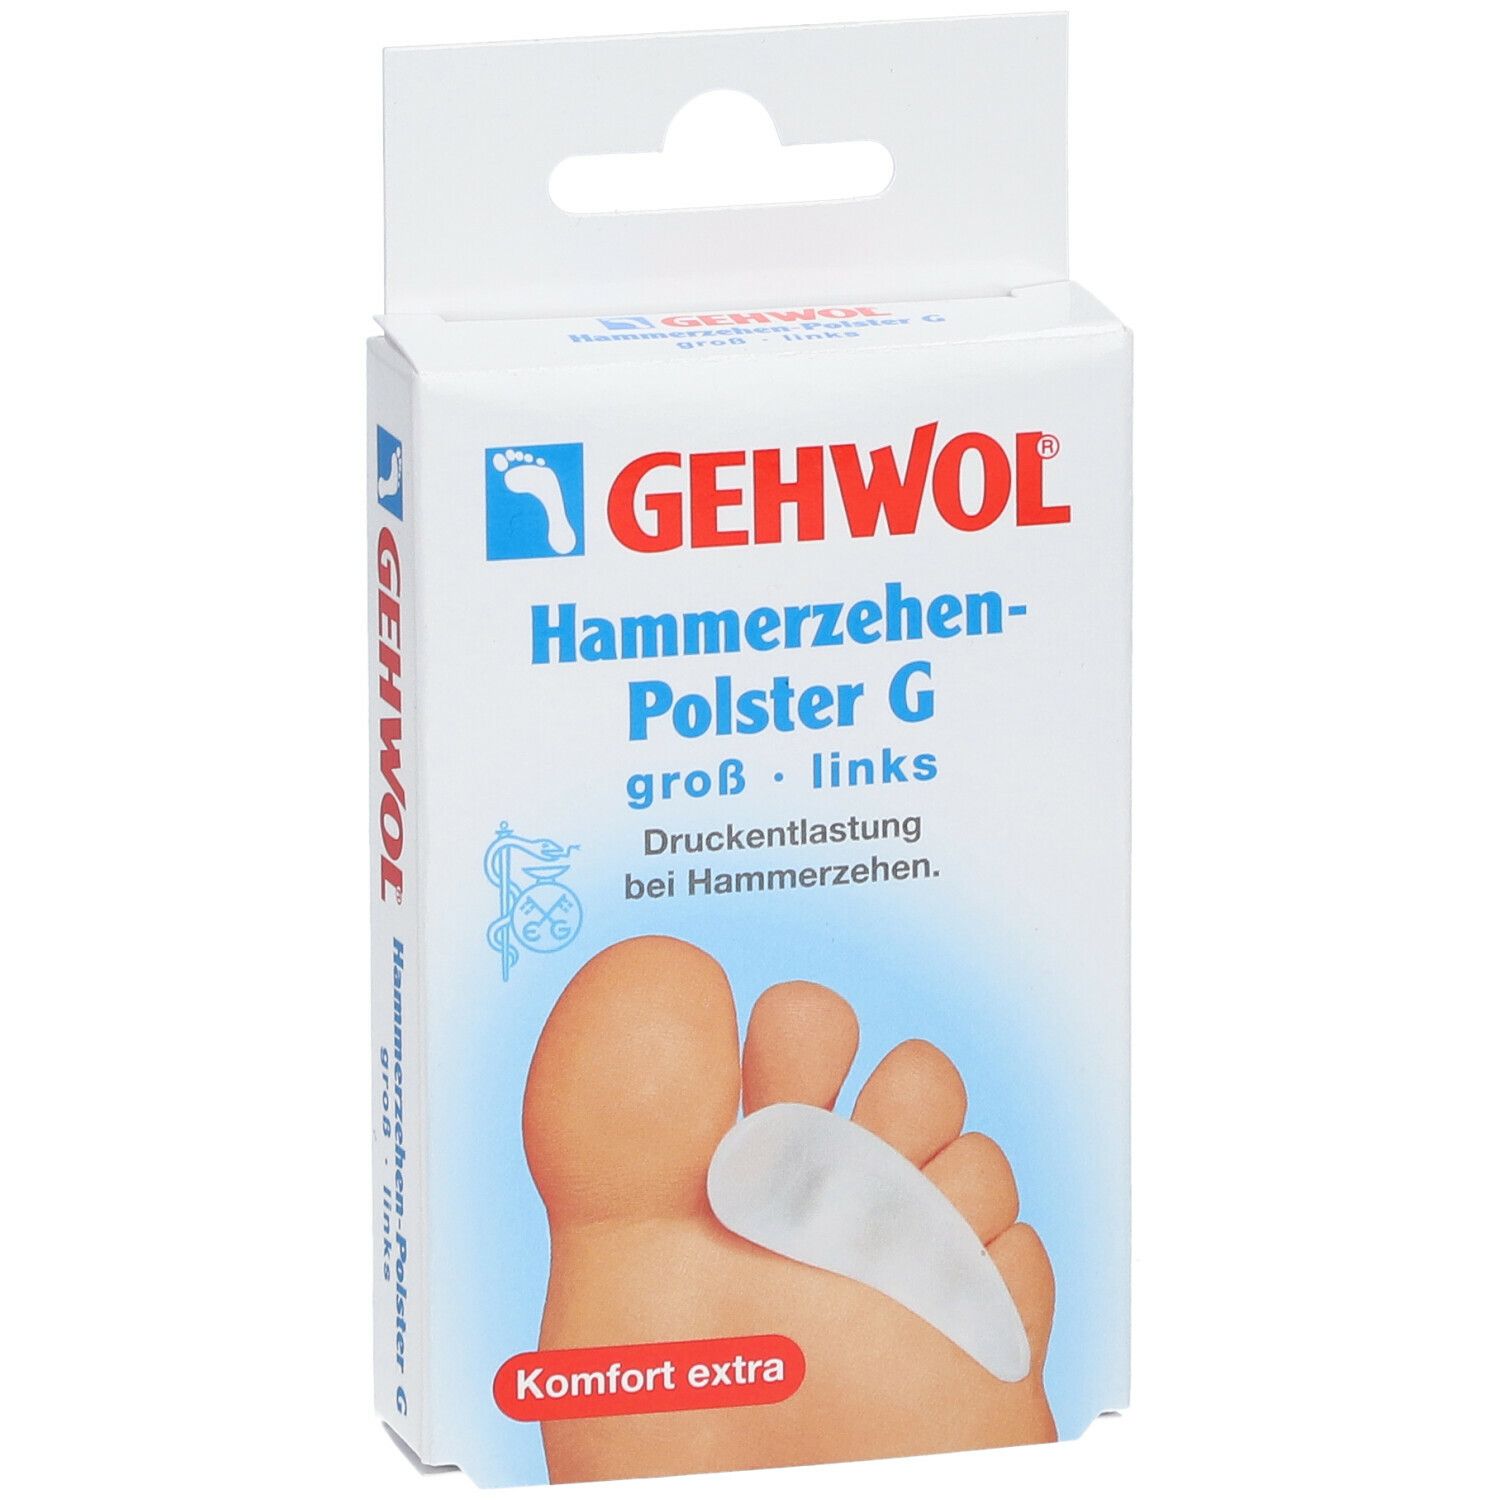 GEHWOL® Hammerzehen-Polster G